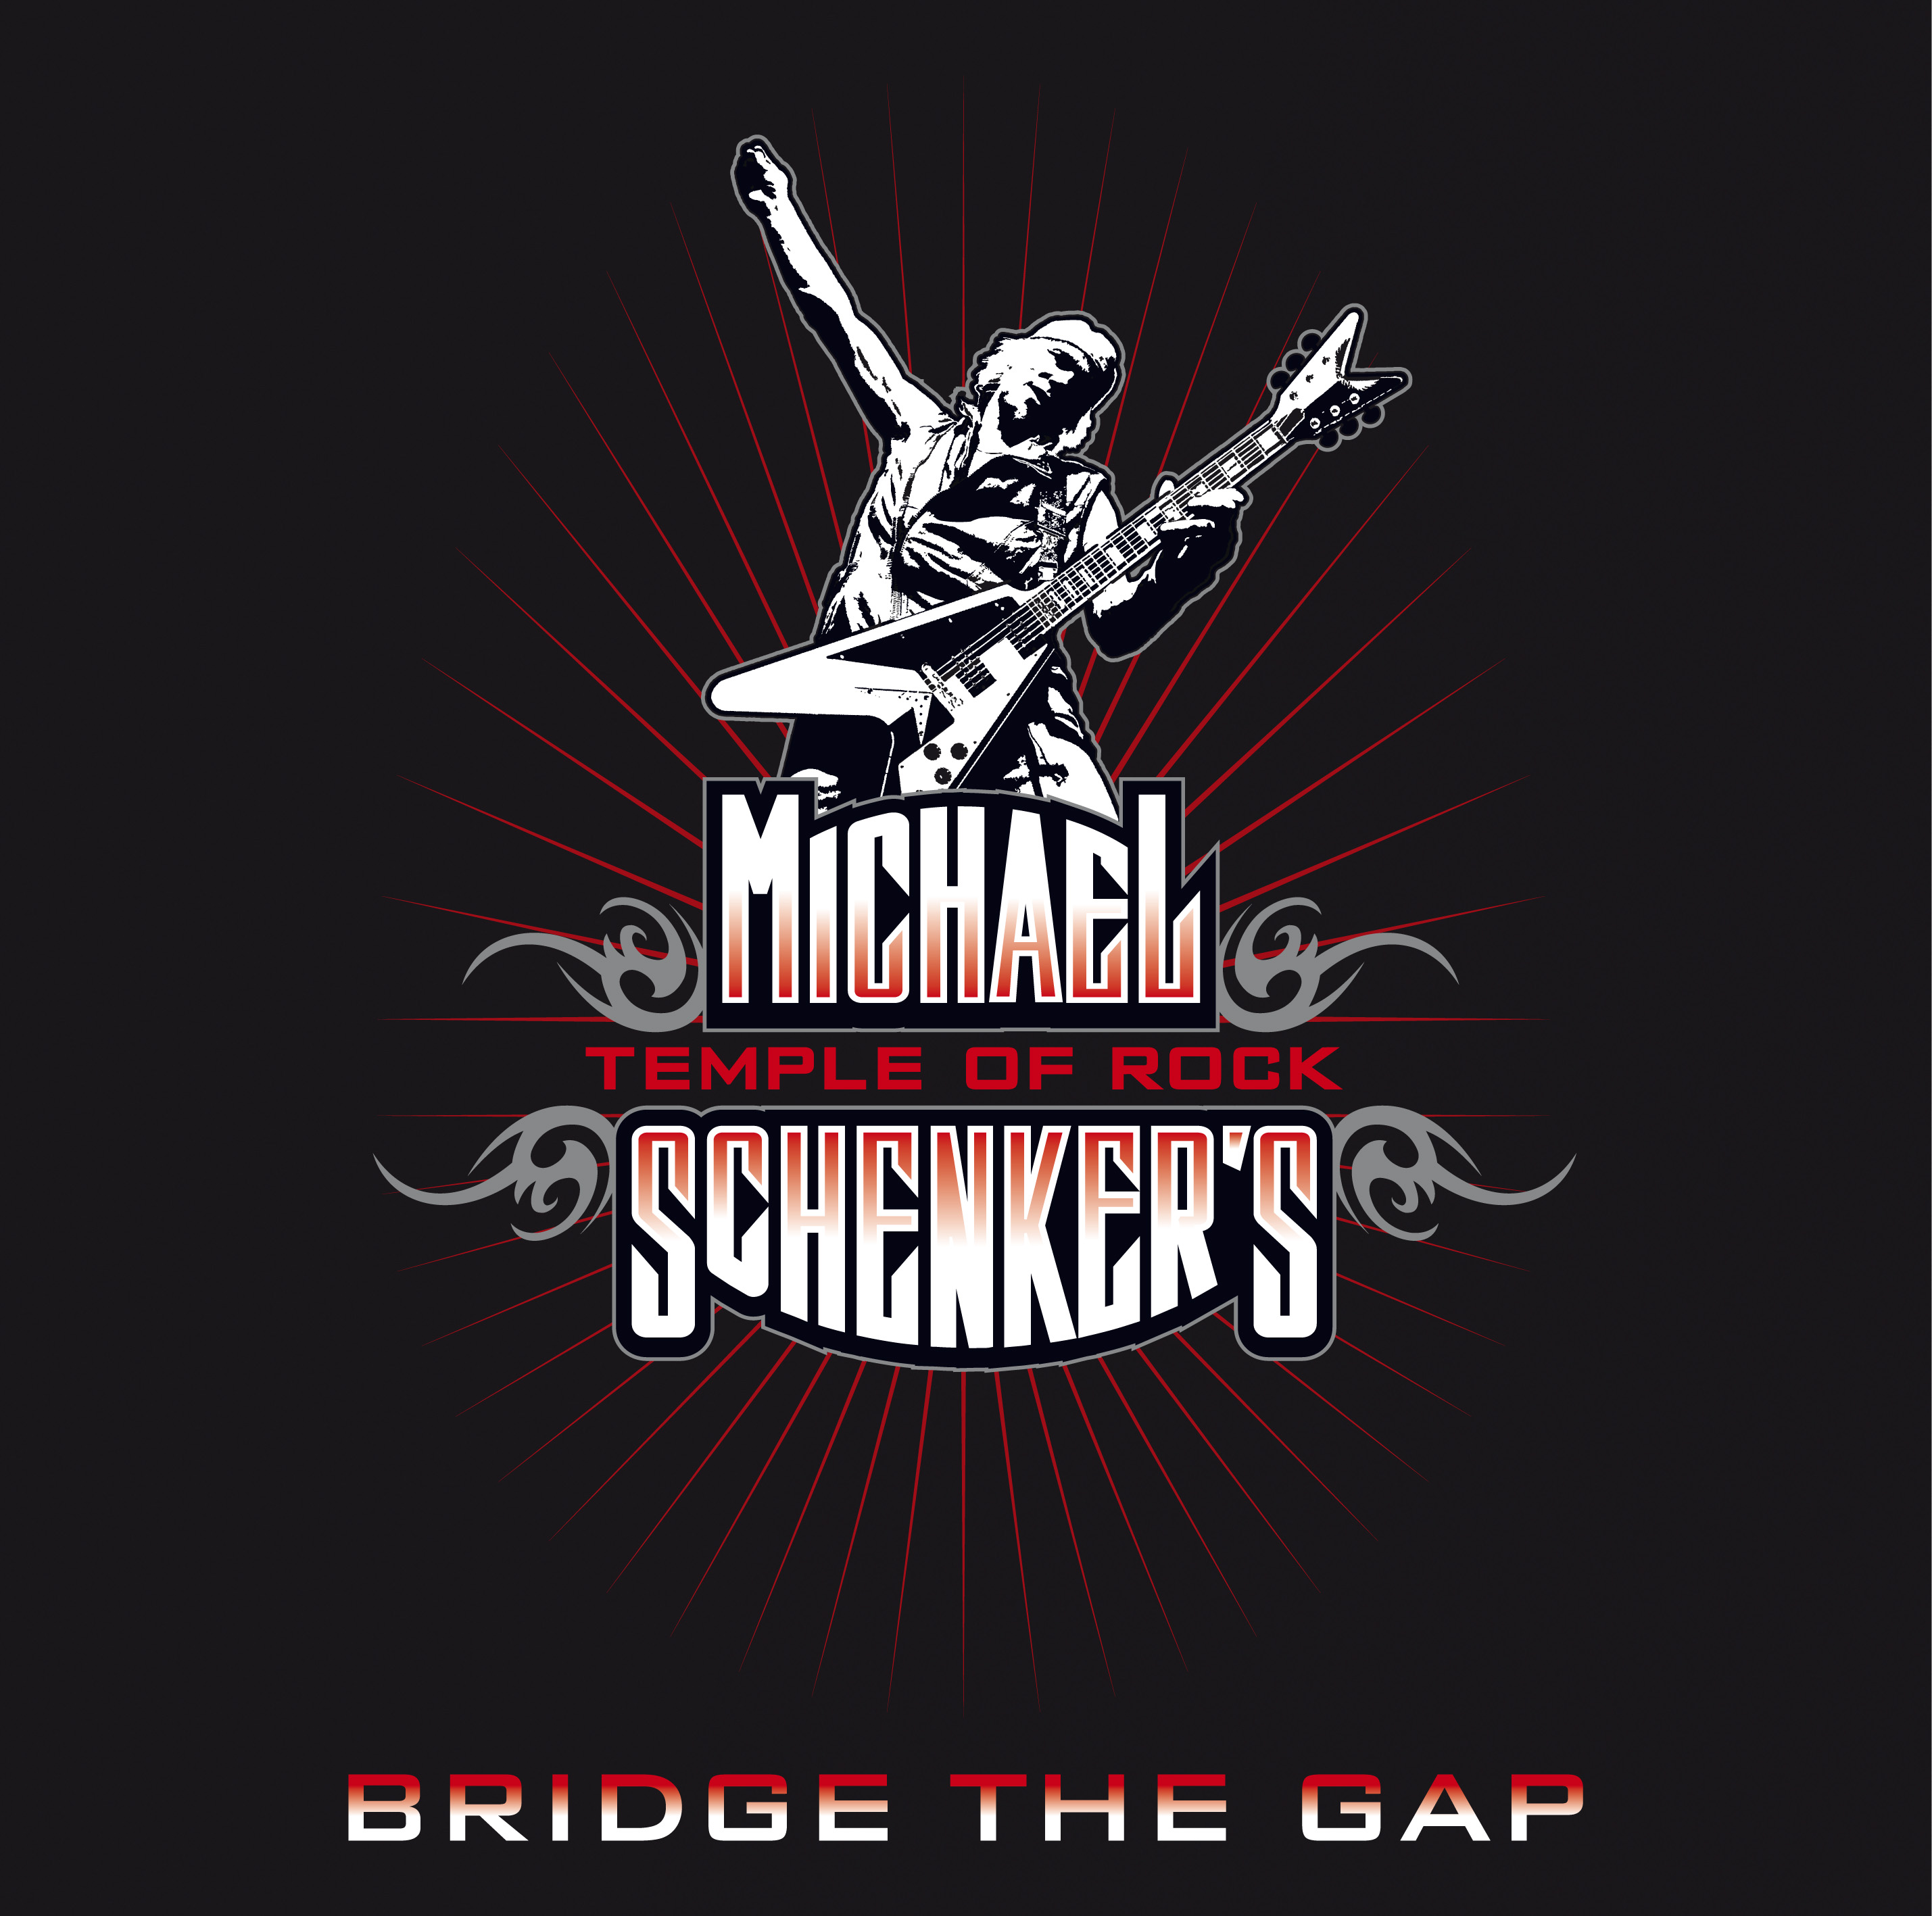 Michael Schenker's Temple of Rock - Bridge Gap Tour 2014